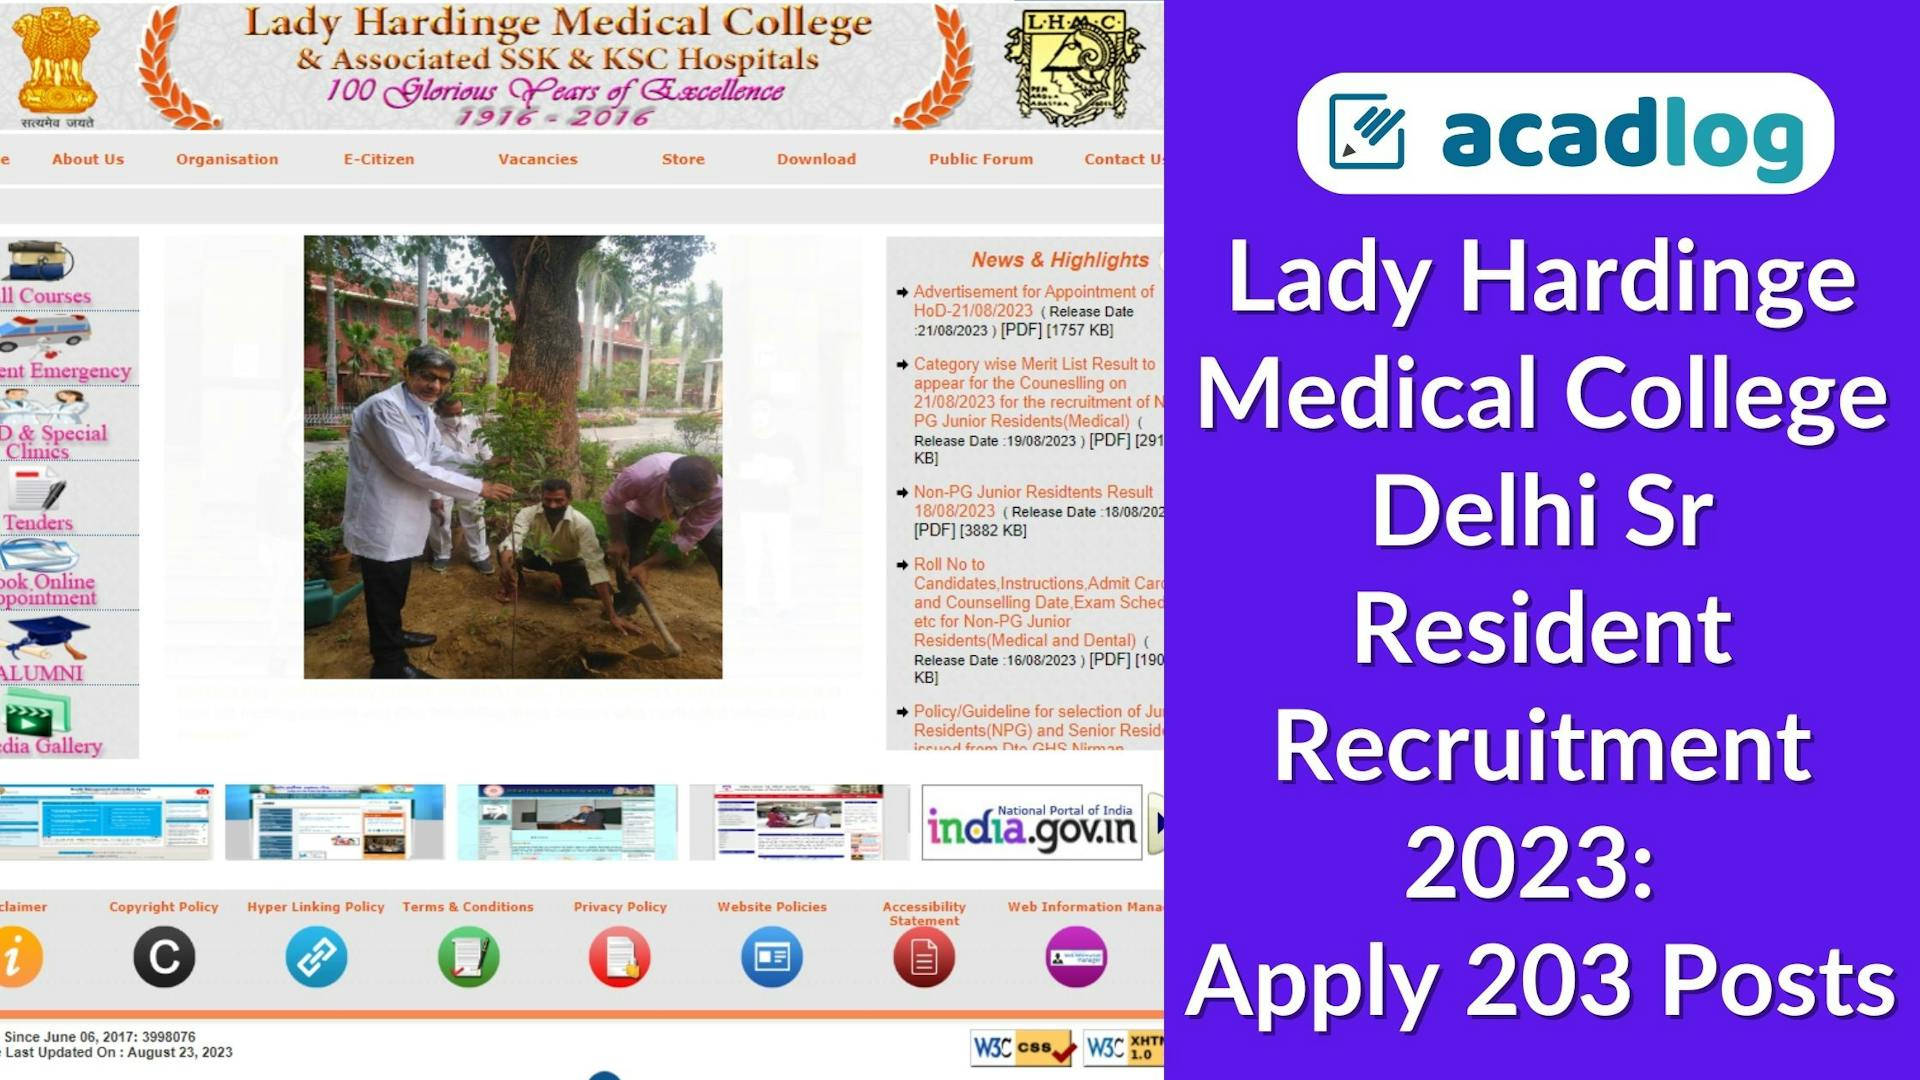 MBBS Jobs Delhi 2023: Recruitment for 203 Sr. Resident in Lady Hardinge College